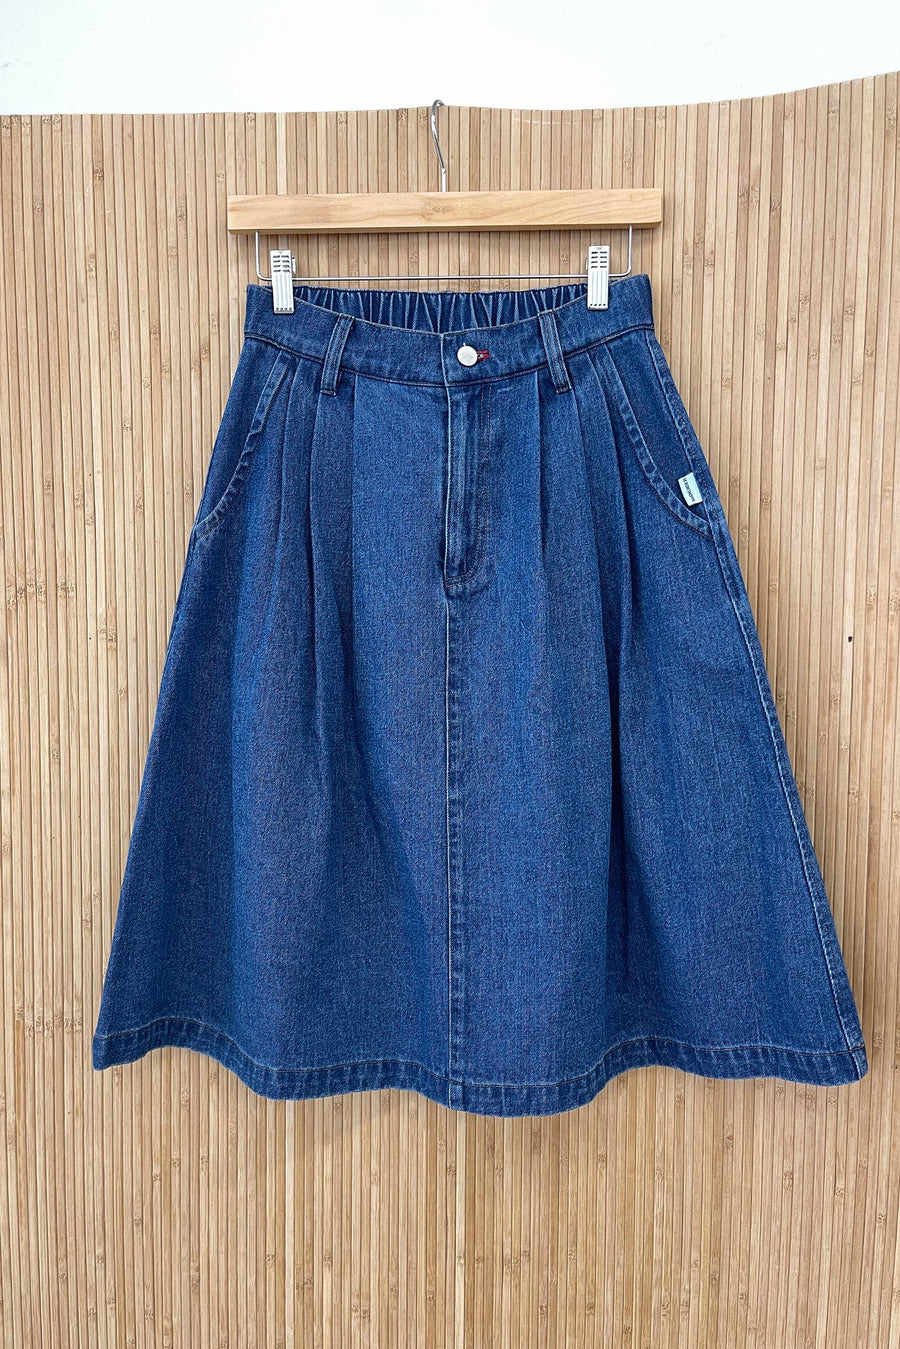 Farm Girl Skirt  (Blue Denim)